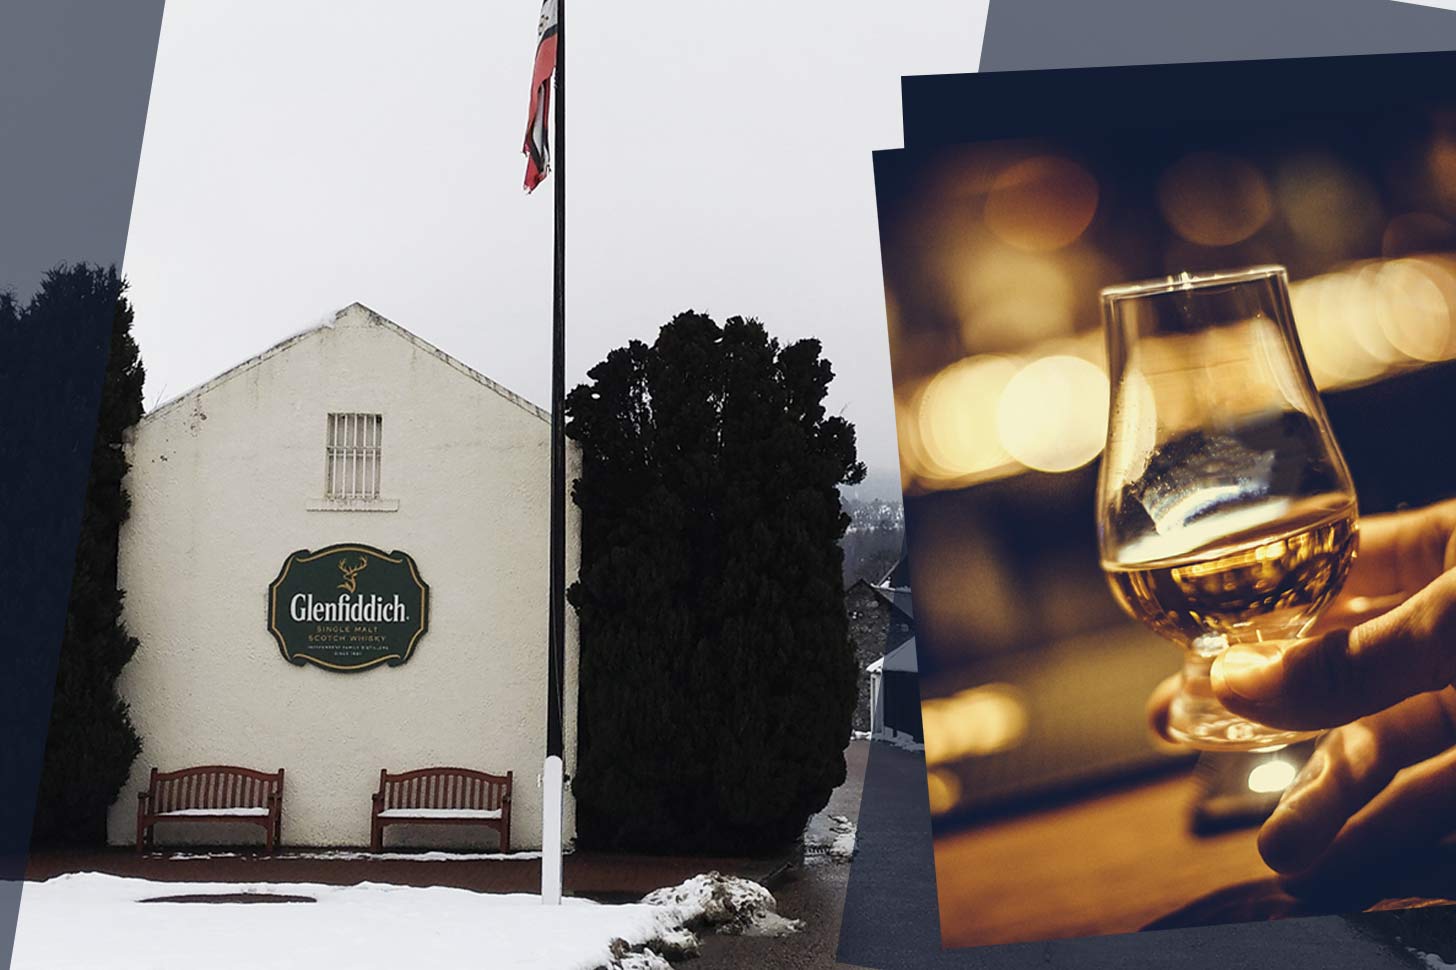 【蘇格蘭威士忌之旅】直擊世界威士忌首府Dufftown一日遊！帶你參觀Glenfiddich、Balvenie酒廠